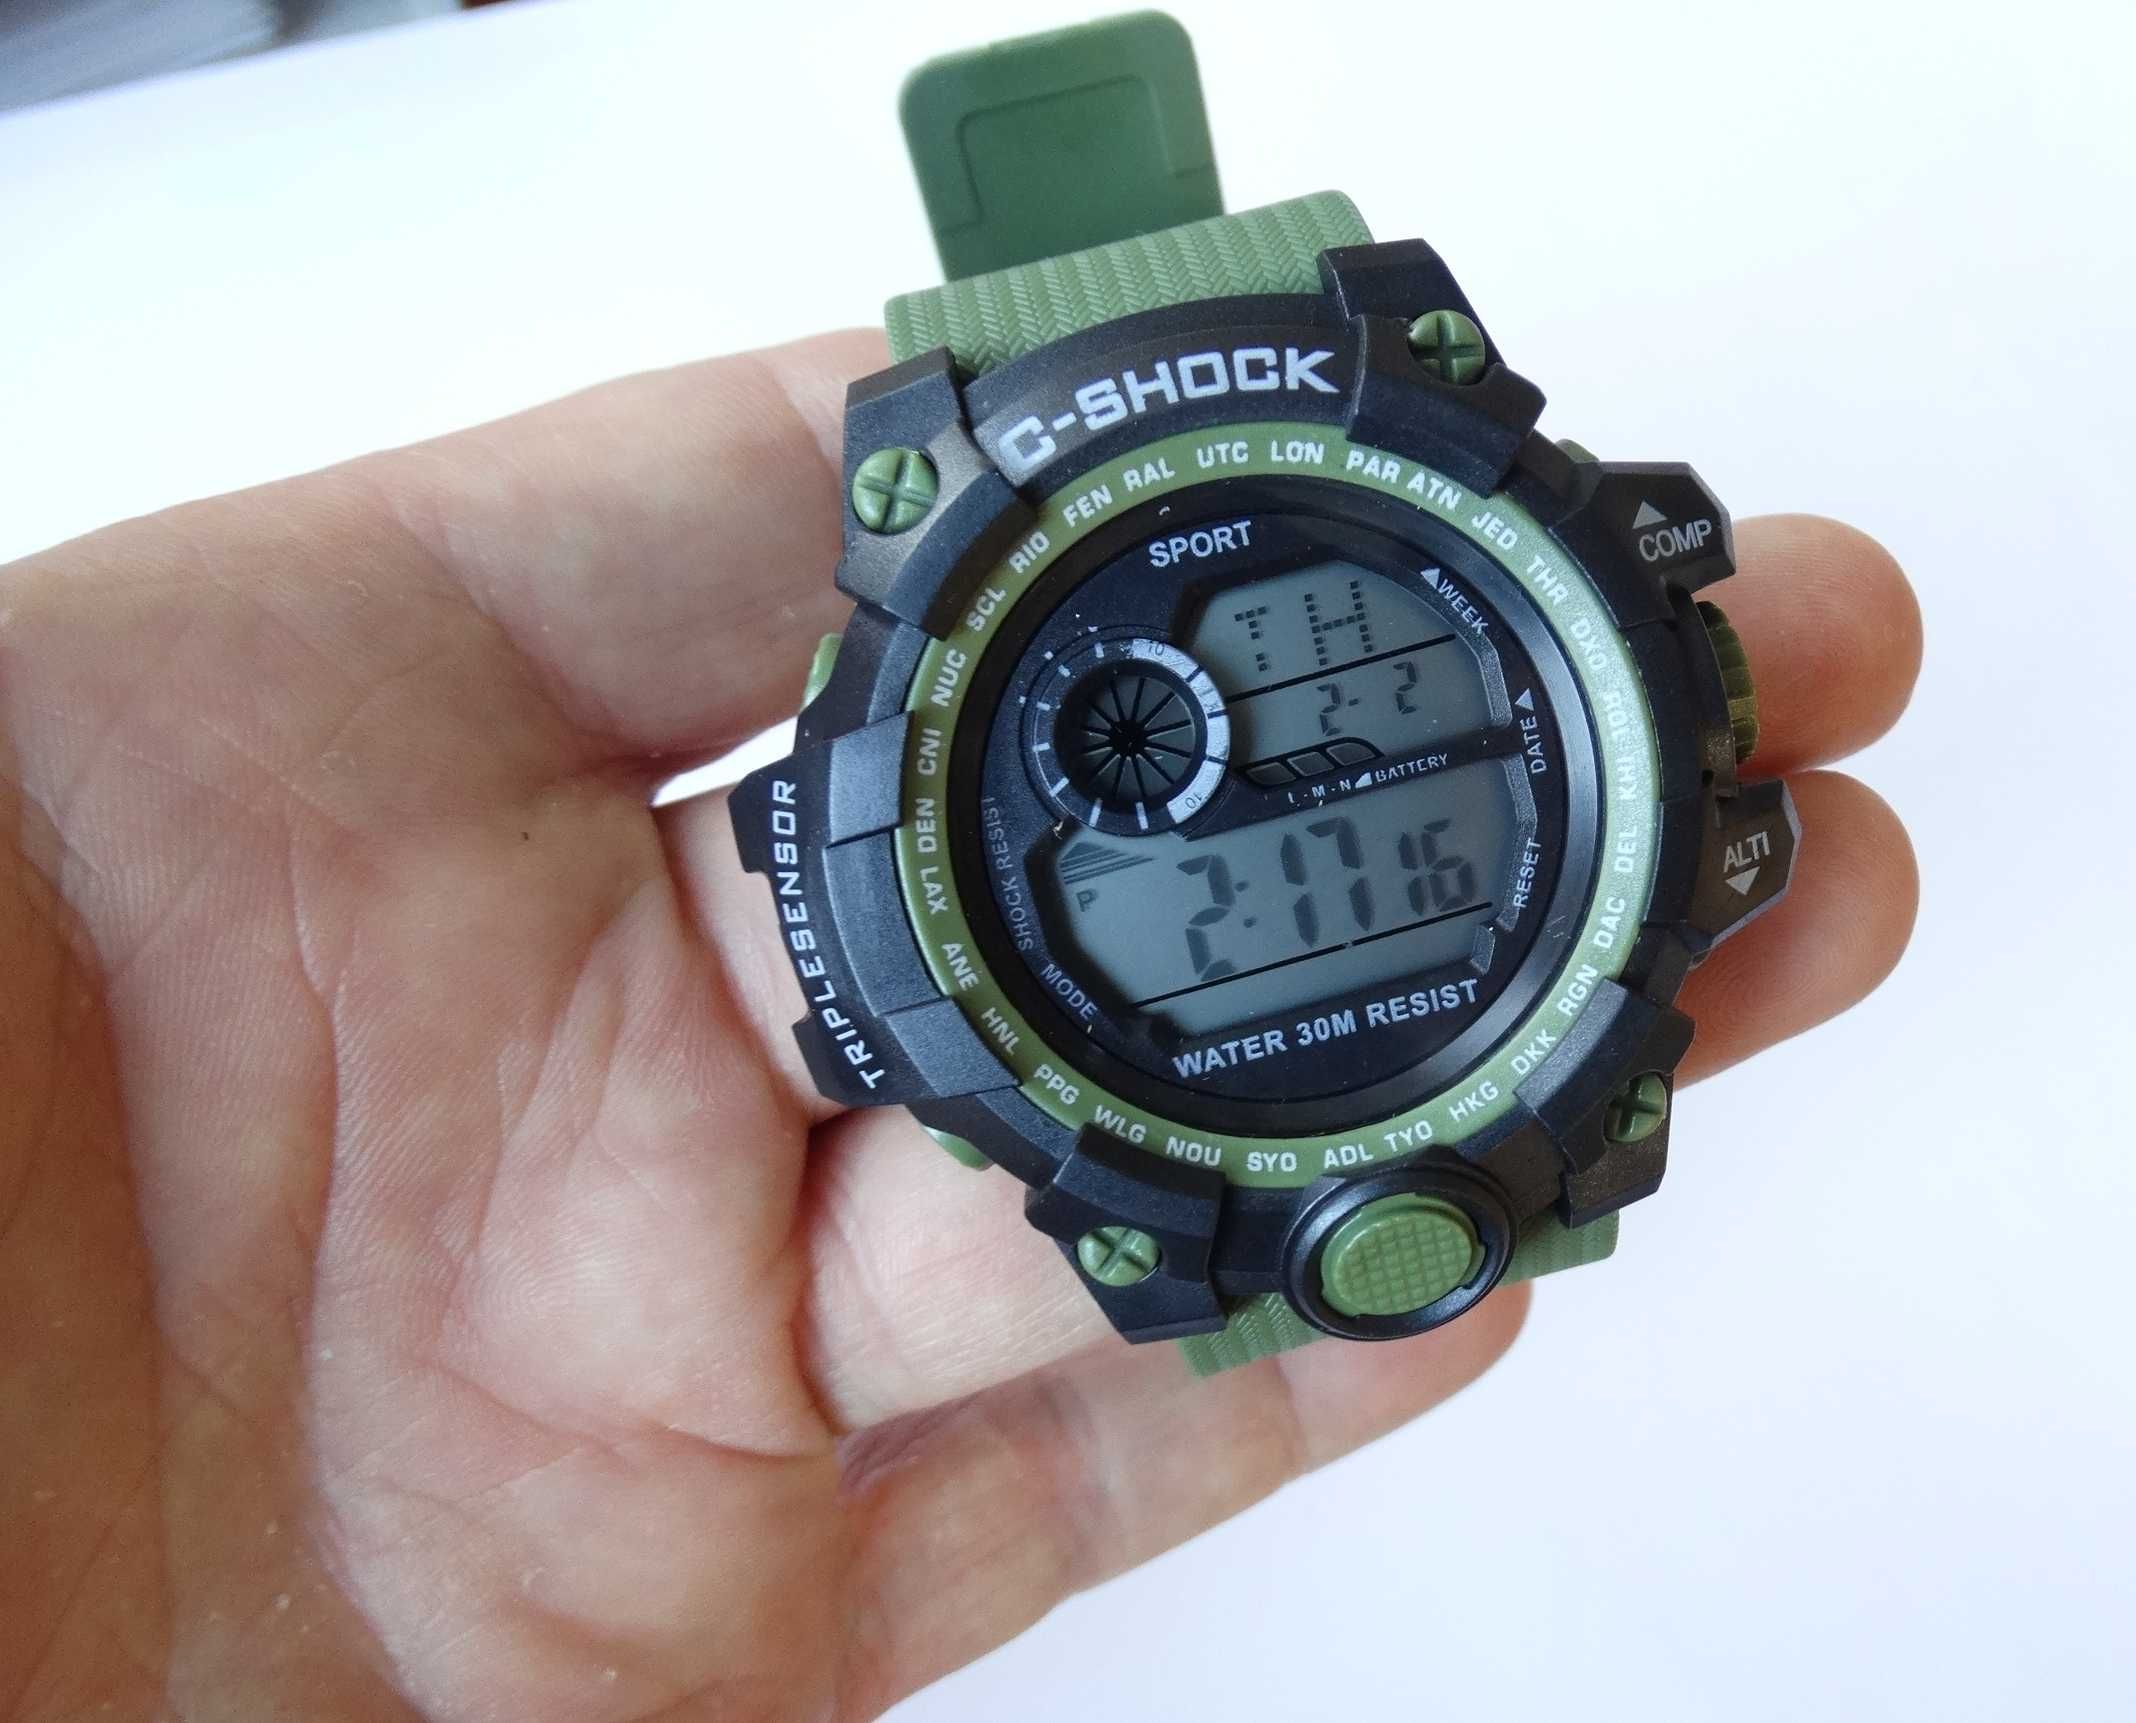 Elektroniczny Zegarek męski militarny C-Shock zielony wojskowy cyfrowy